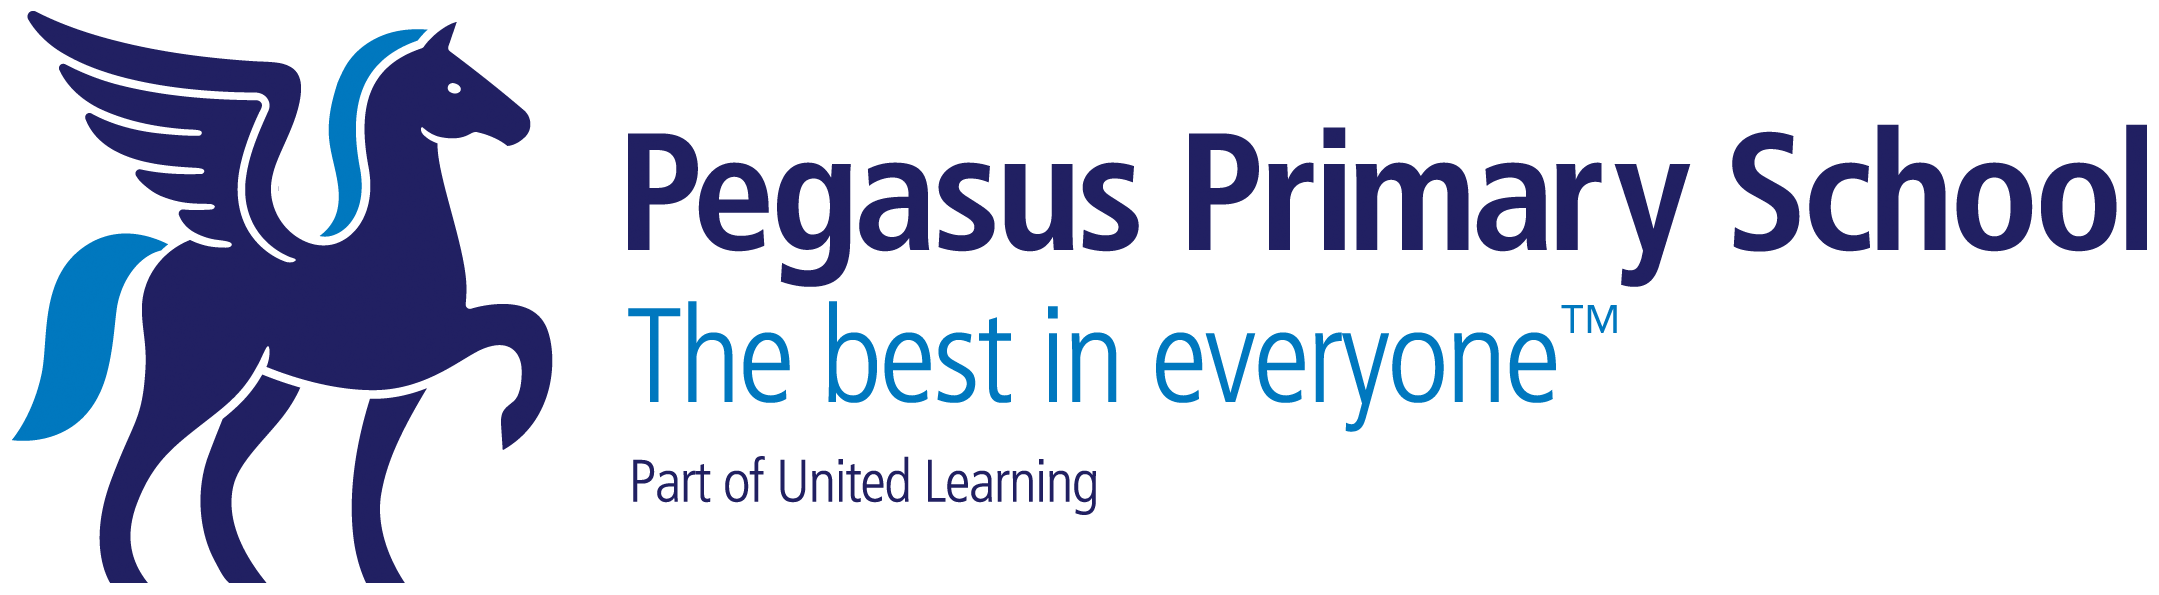 Pegasus Primary School